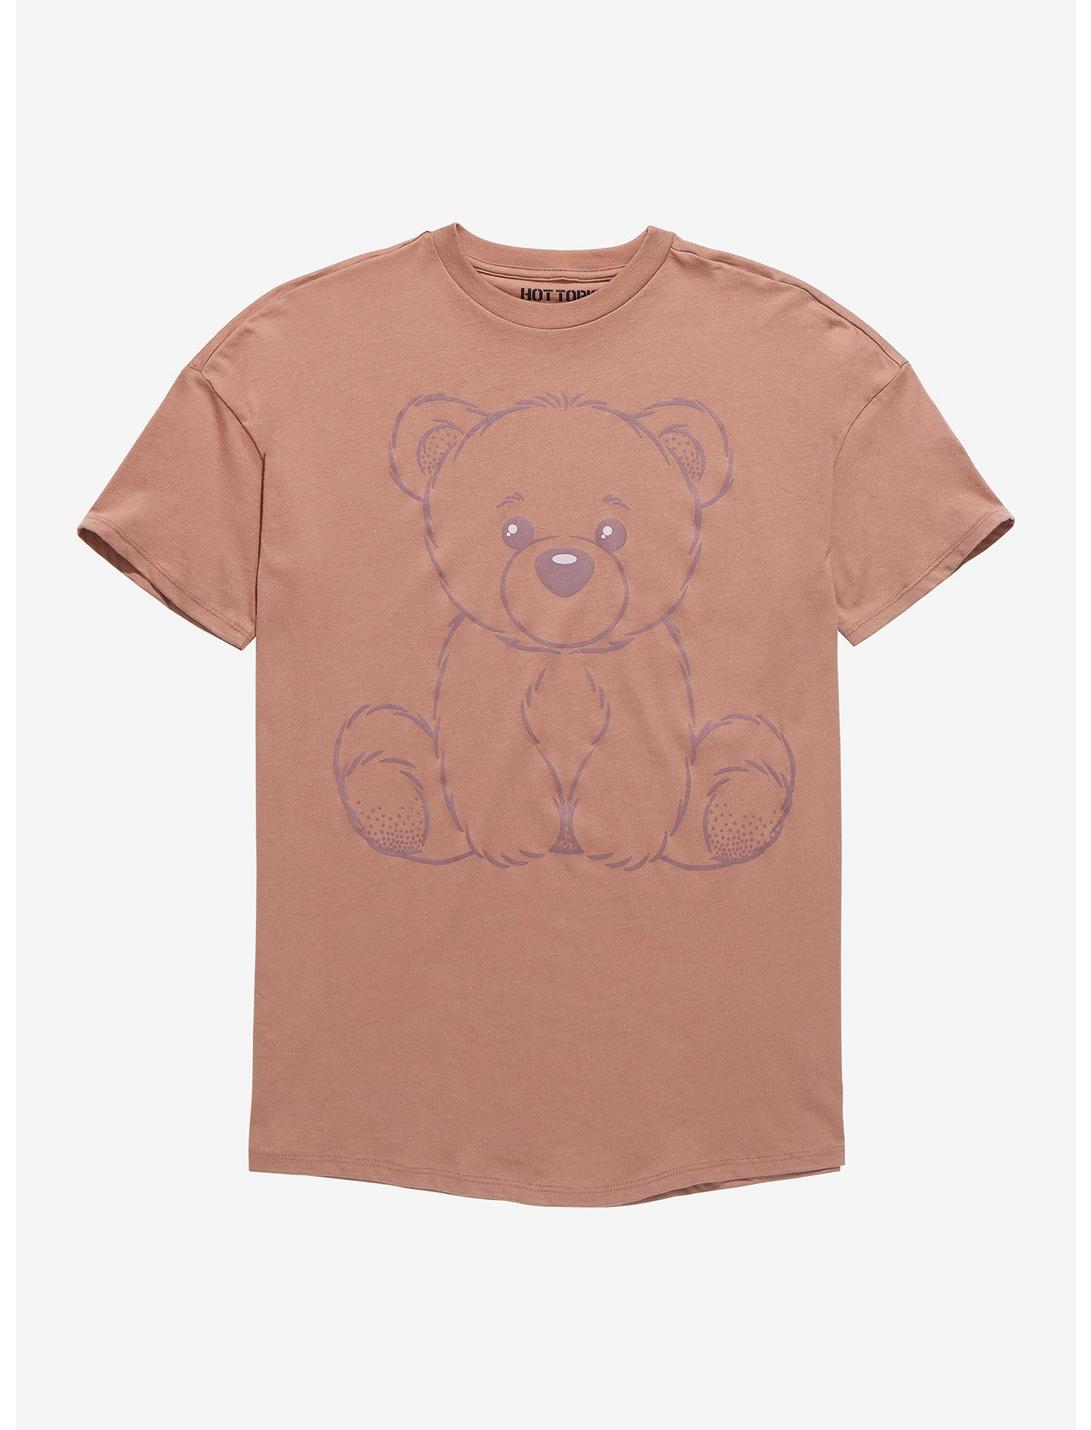 Brown Teddy Bear Boyfriend Fit Girls T-Shirt, MULTI, hi-res